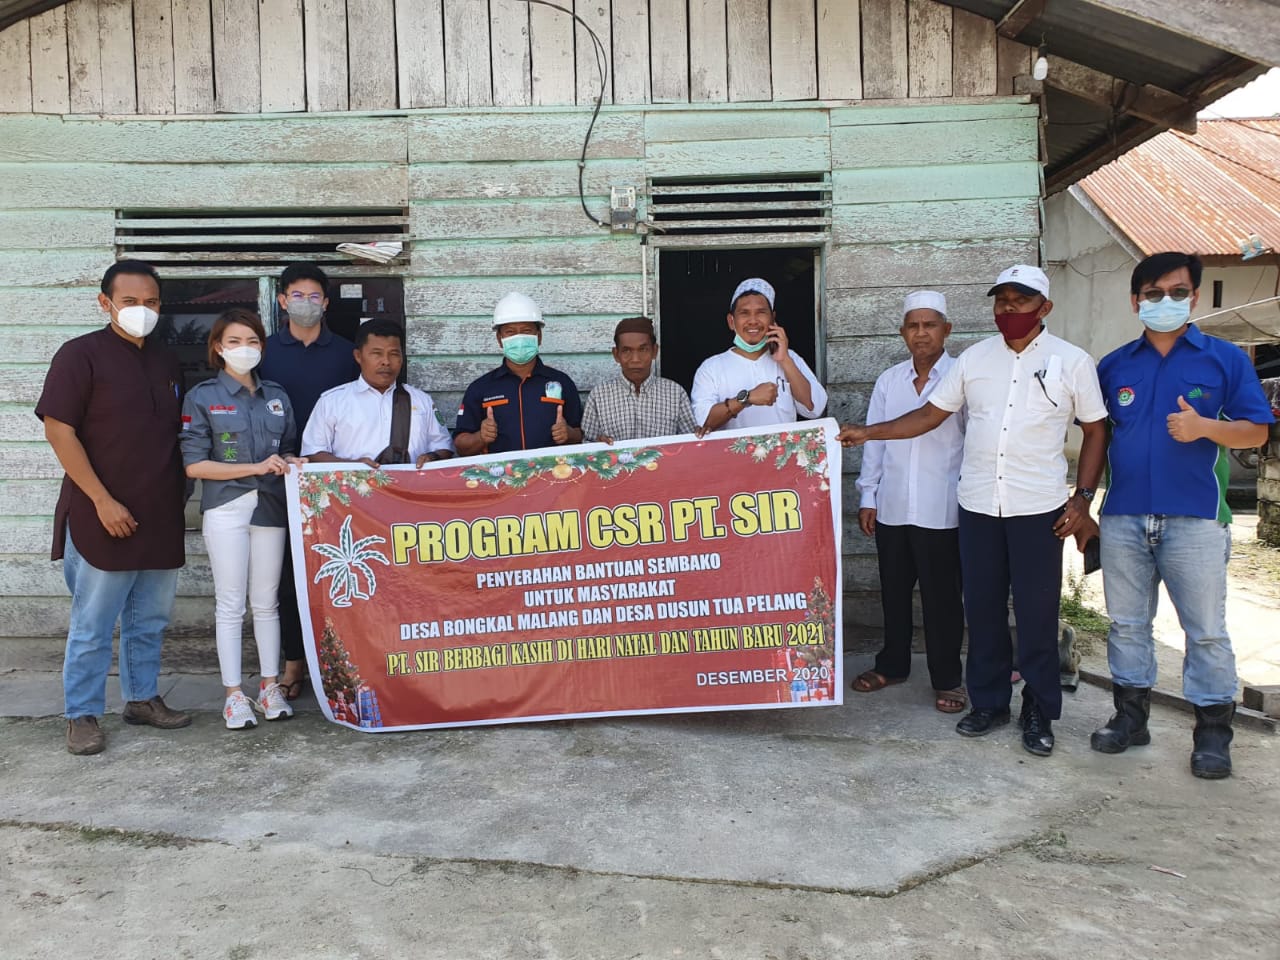 PT SIR Inhu Salurkan CSR ke Desa Dusun Tua Pelang dan Bongkal Malang